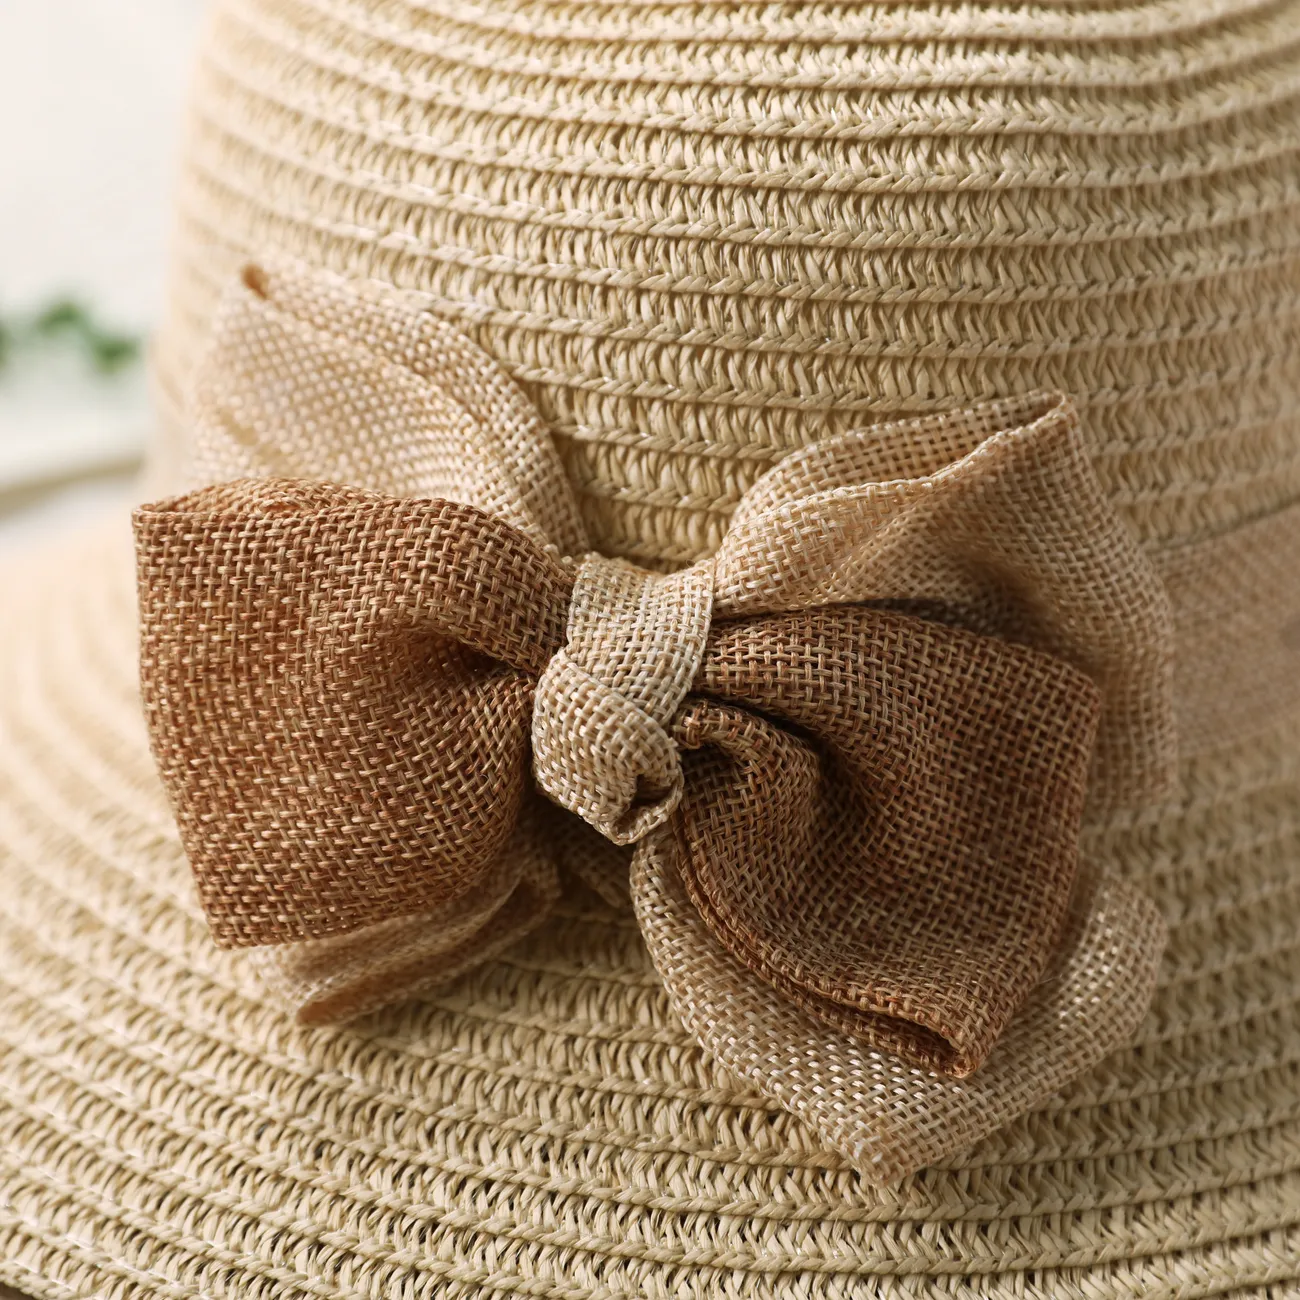 قبعة الشمس الصيفية للفتيات مع عقدة وحافة ملفوفة ، قبعة شاطئ سترو للسفر والإجازة اللون البيج big image 1